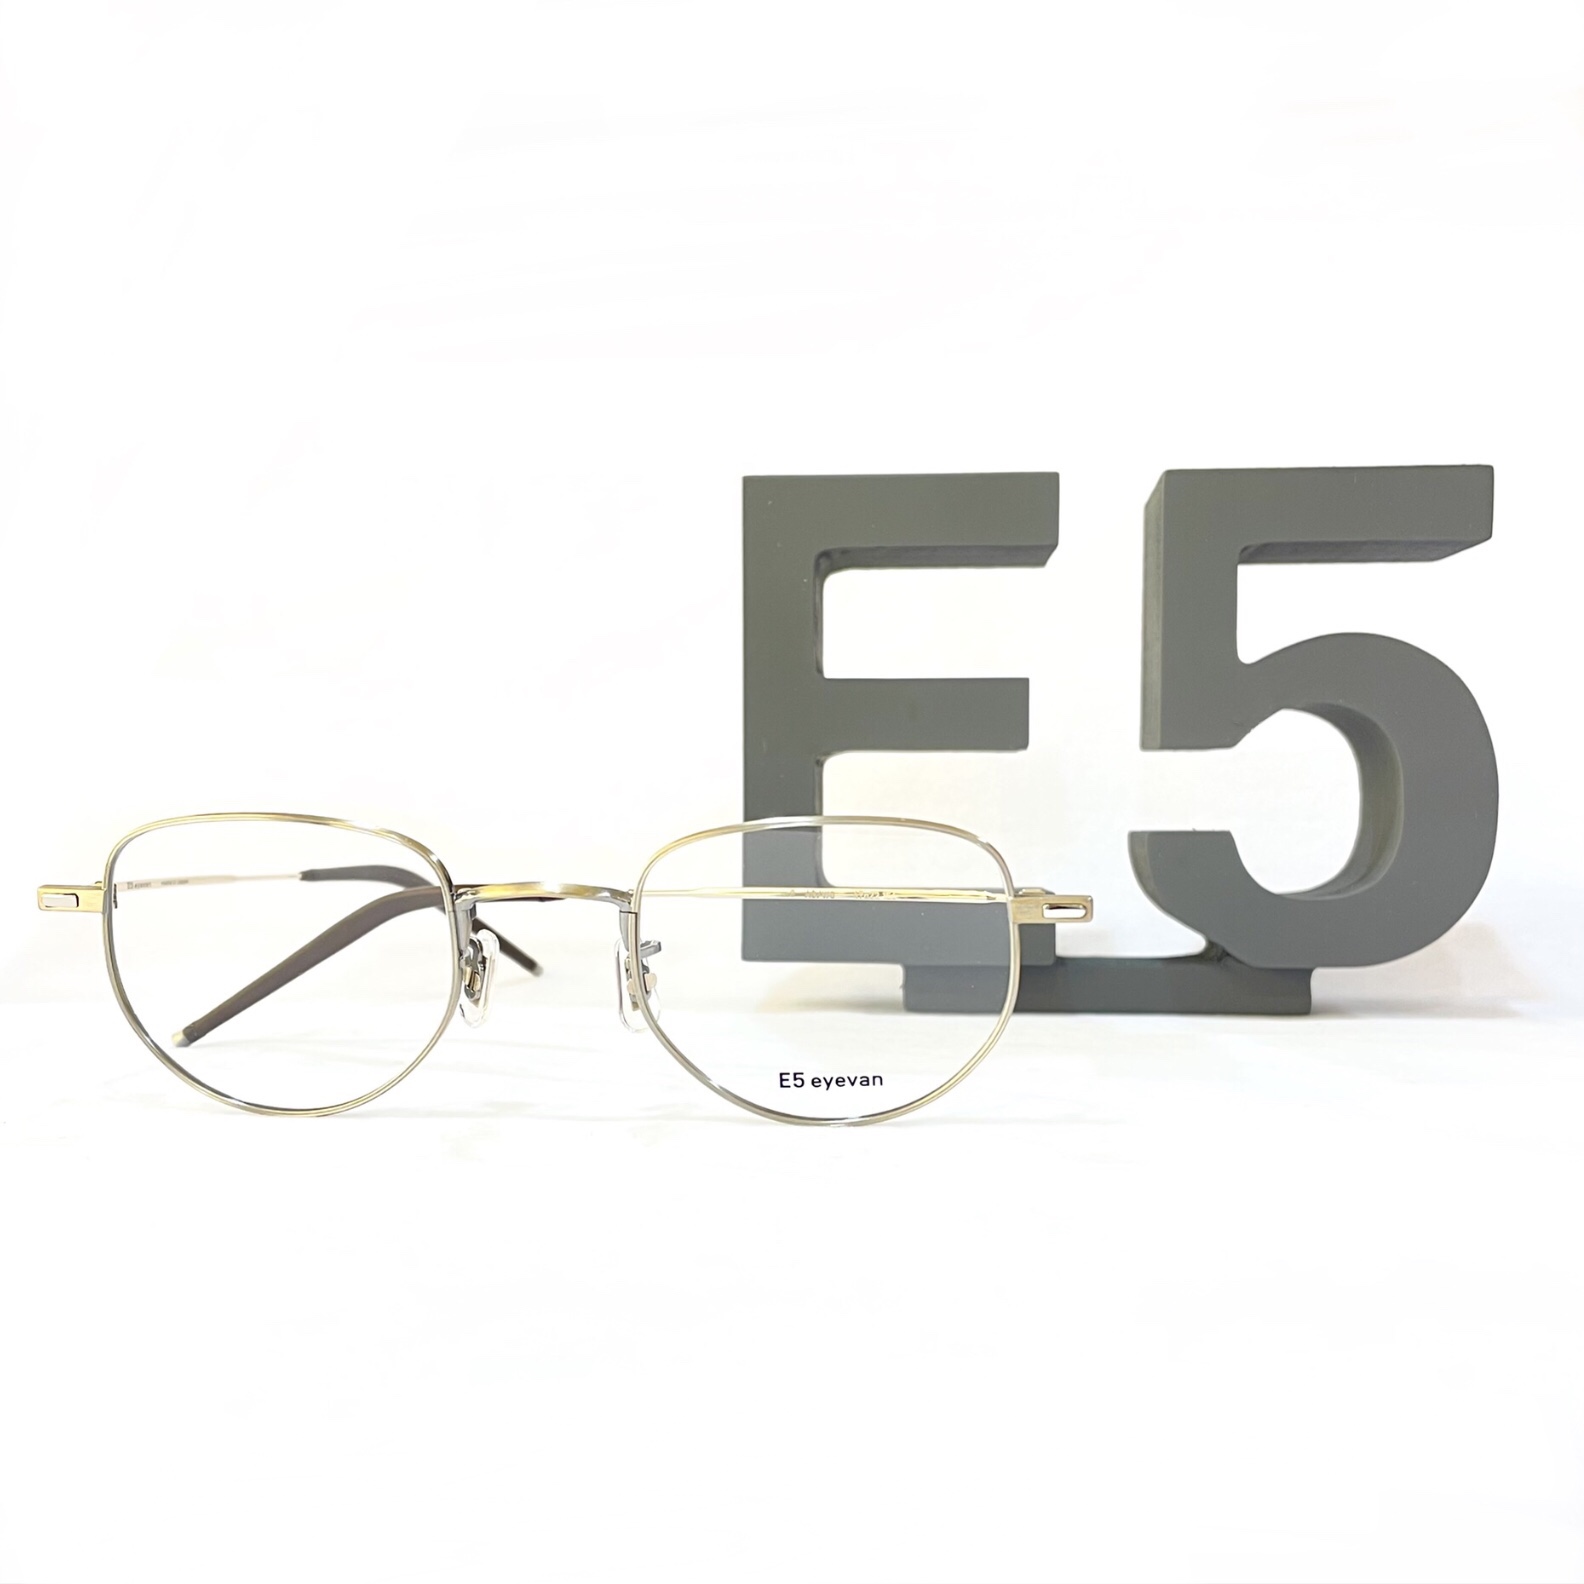 E5 eyevan(イーファイブアイヴァン) 新規取り扱い開始